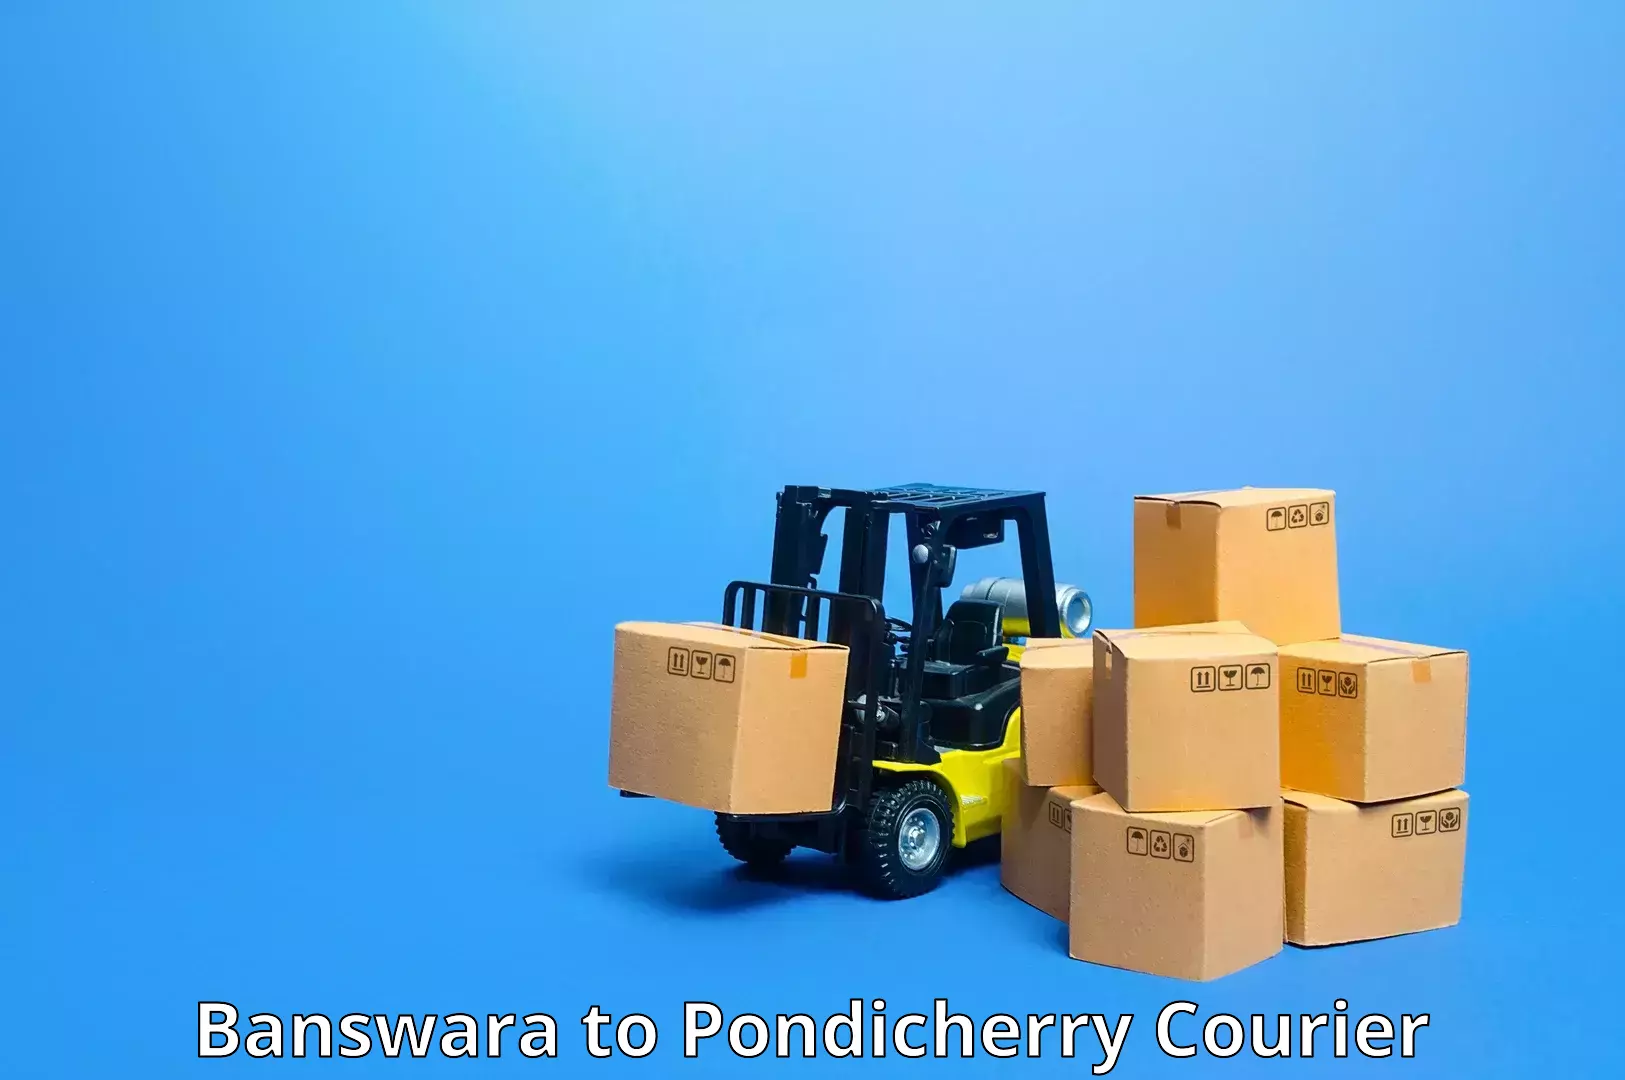 Digital courier platforms Banswara to Pondicherry